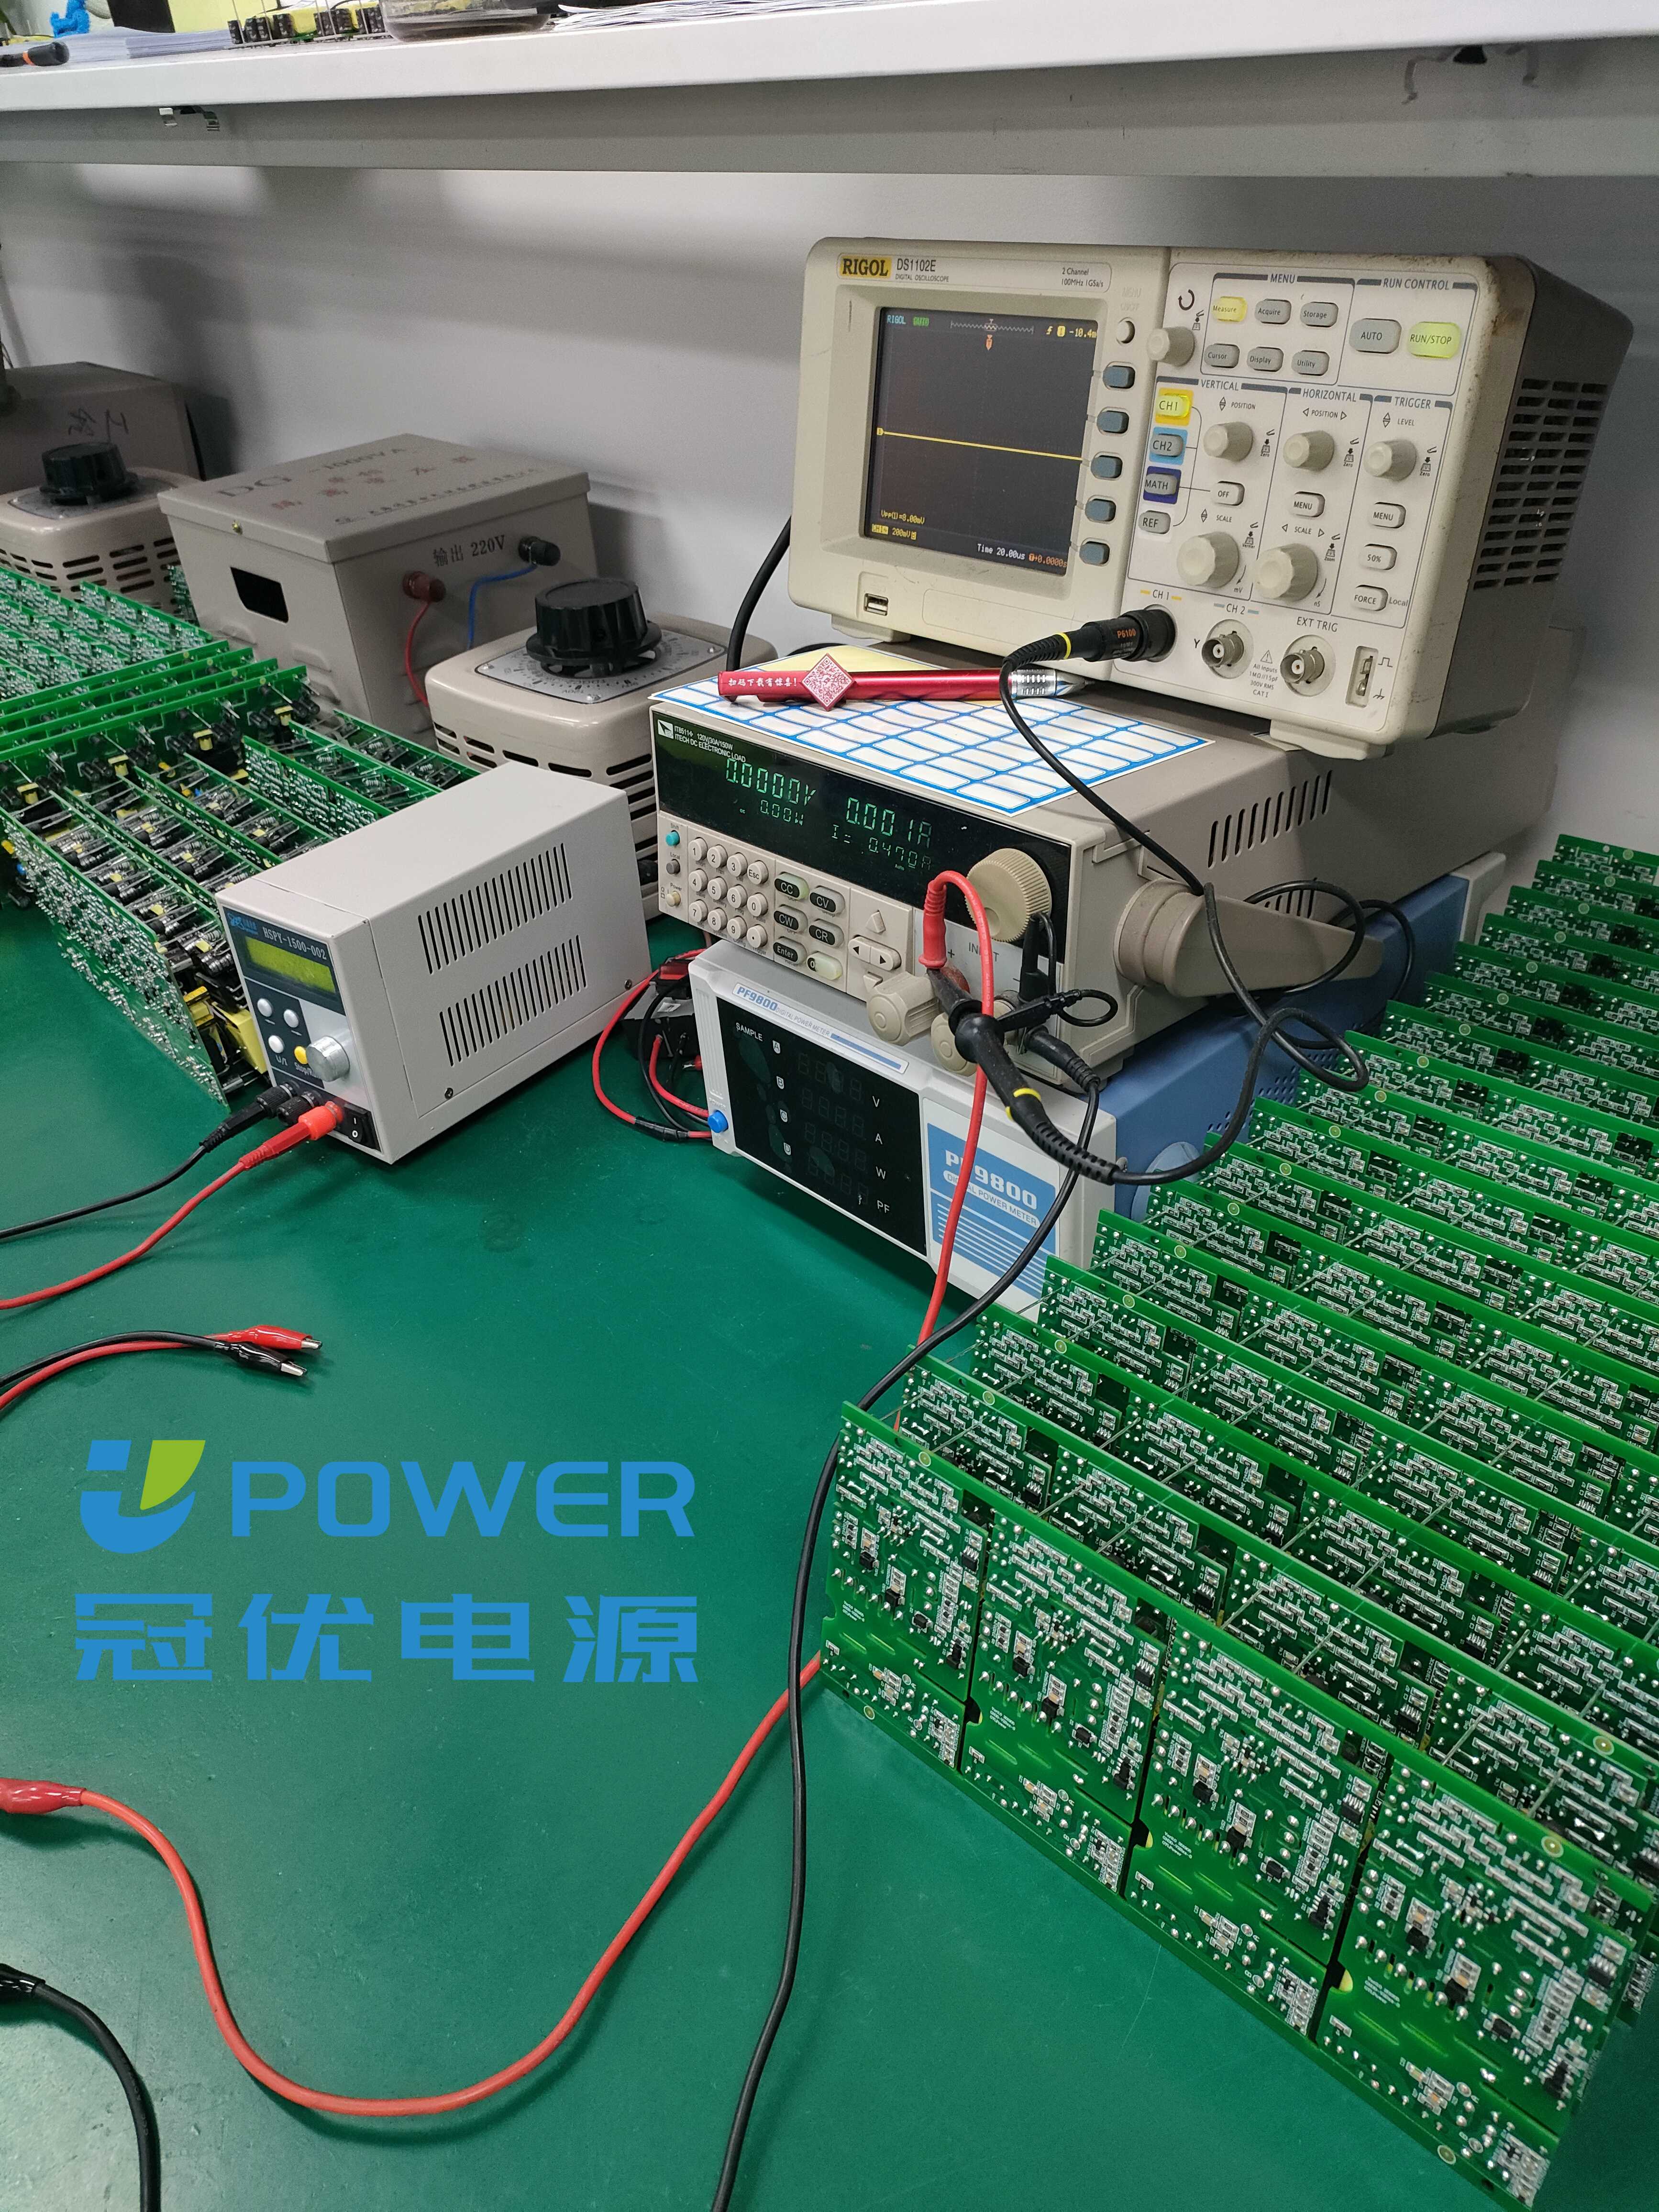 冠优电源高压电源产品助力电池储能系统发展